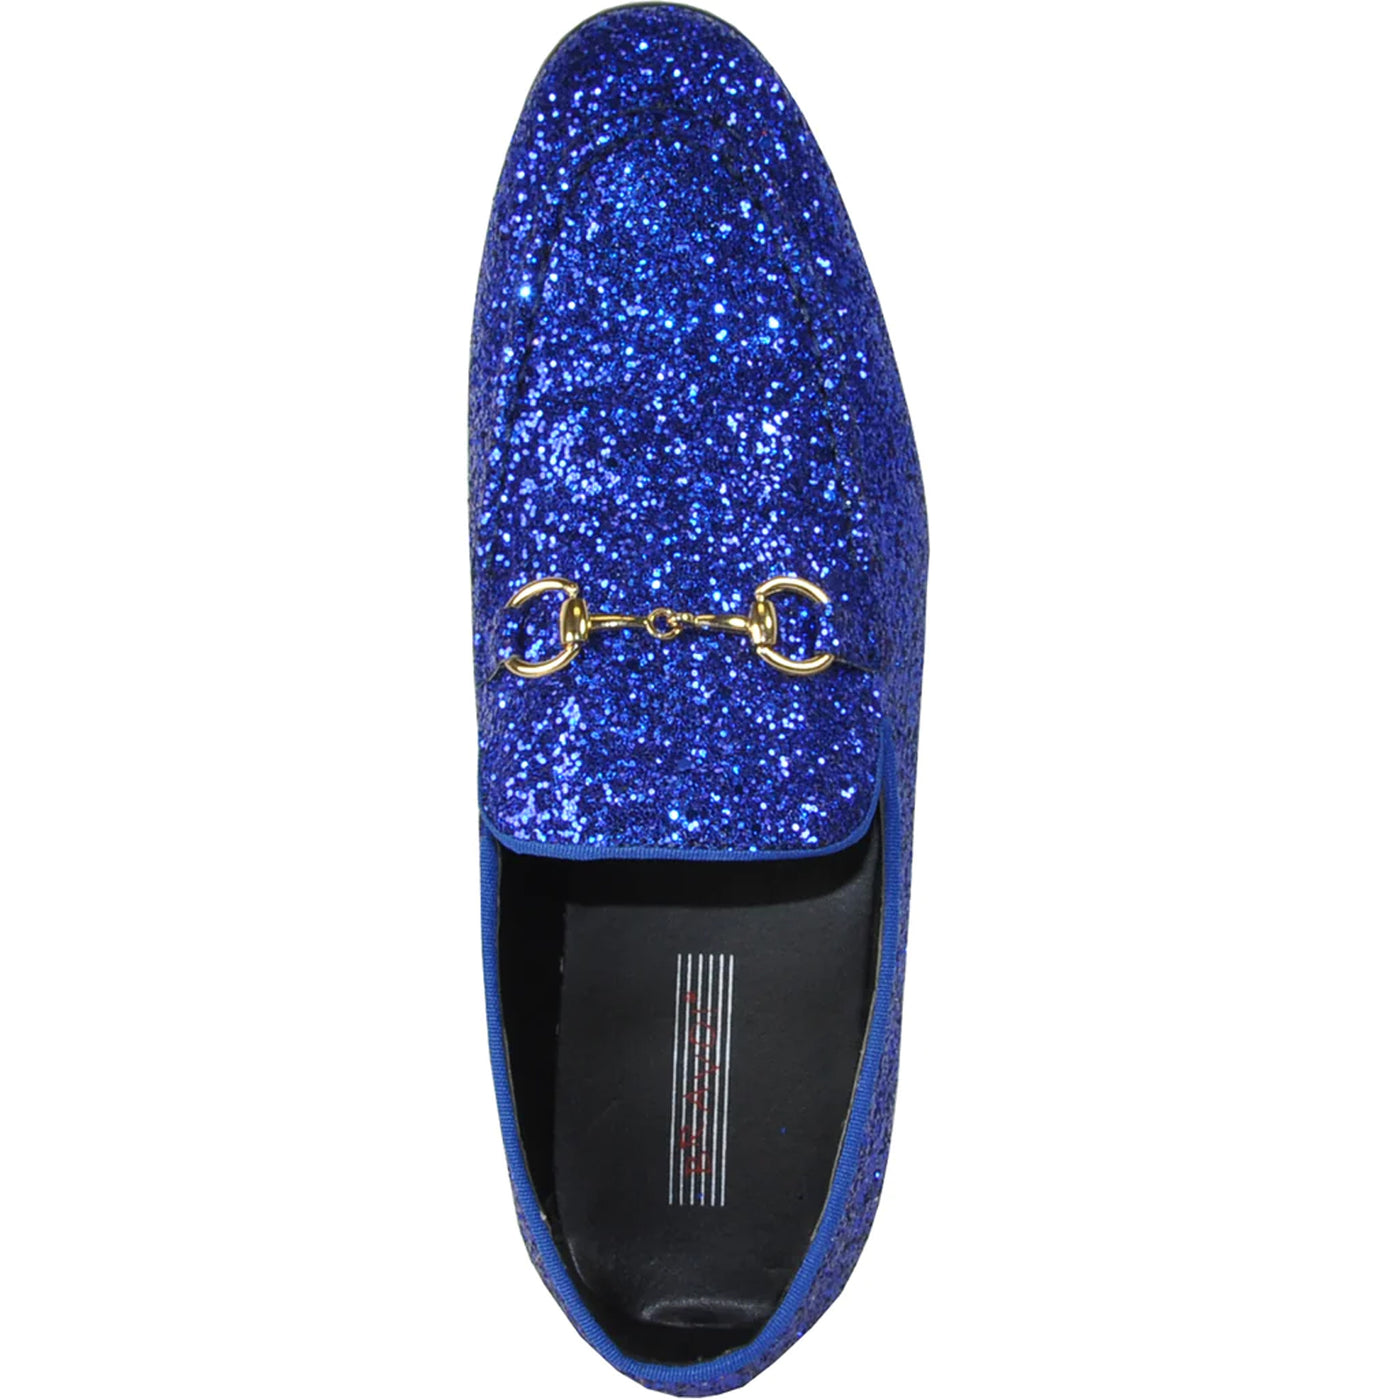 Mens Modern Glitter Sequin Prom Tuxedo Loafer in Royal Blue